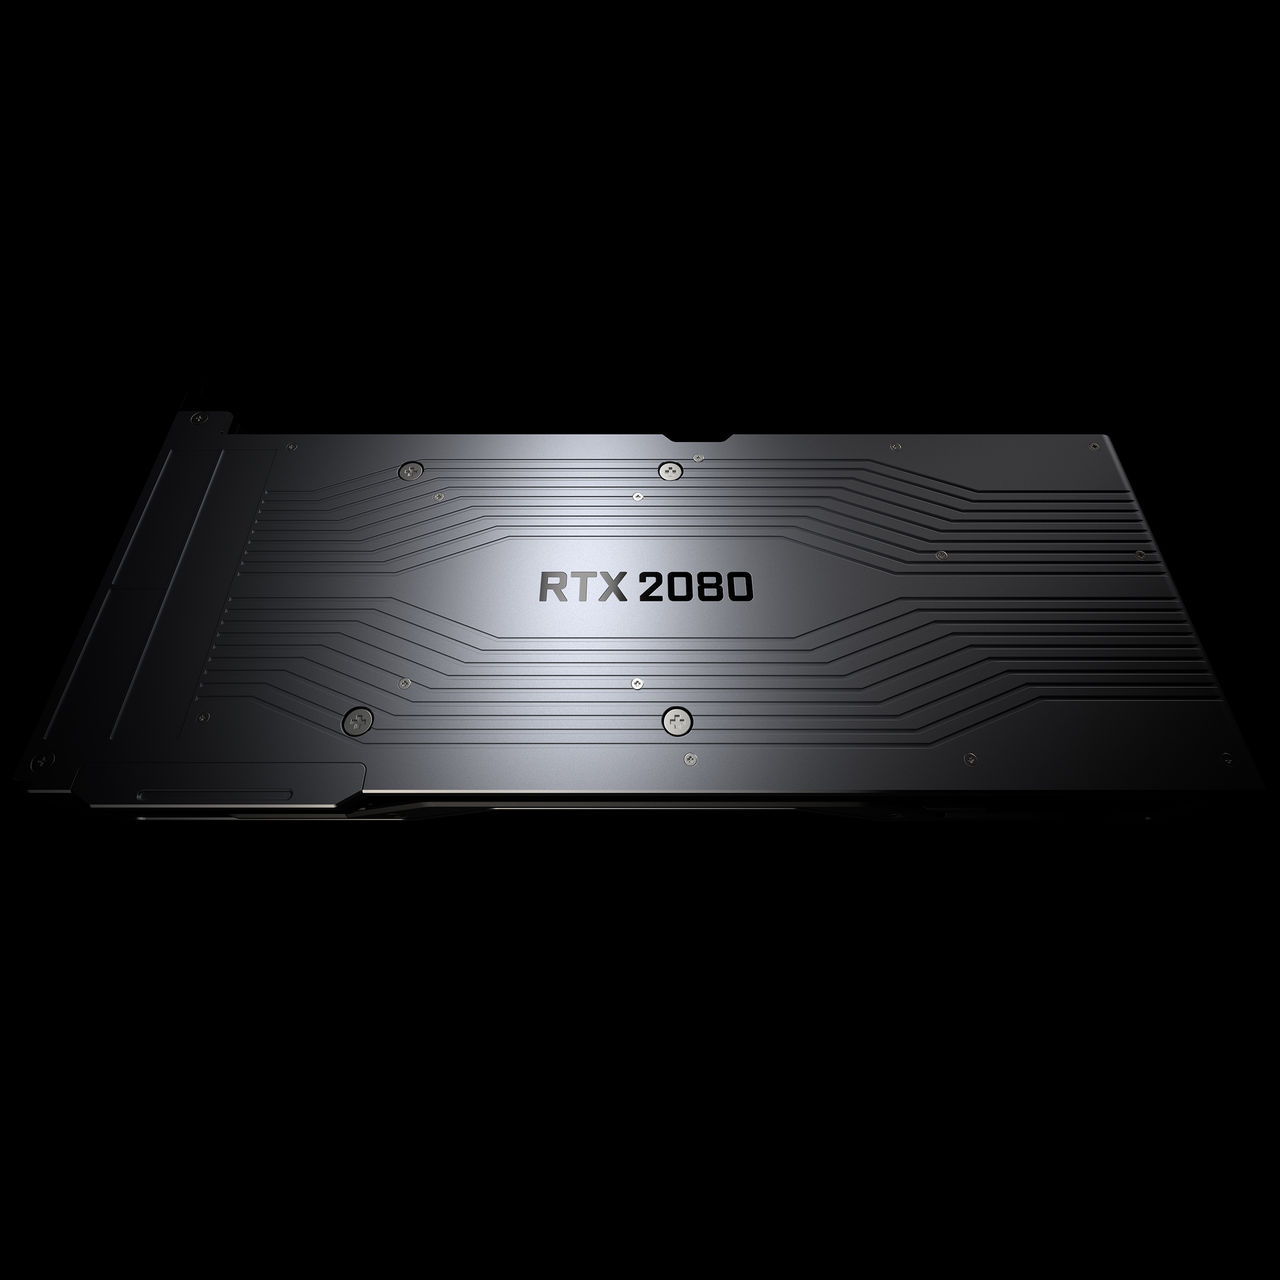 NVIDIA GeForce RTX 2080 costará 849 euros y se lanzará en septiembre